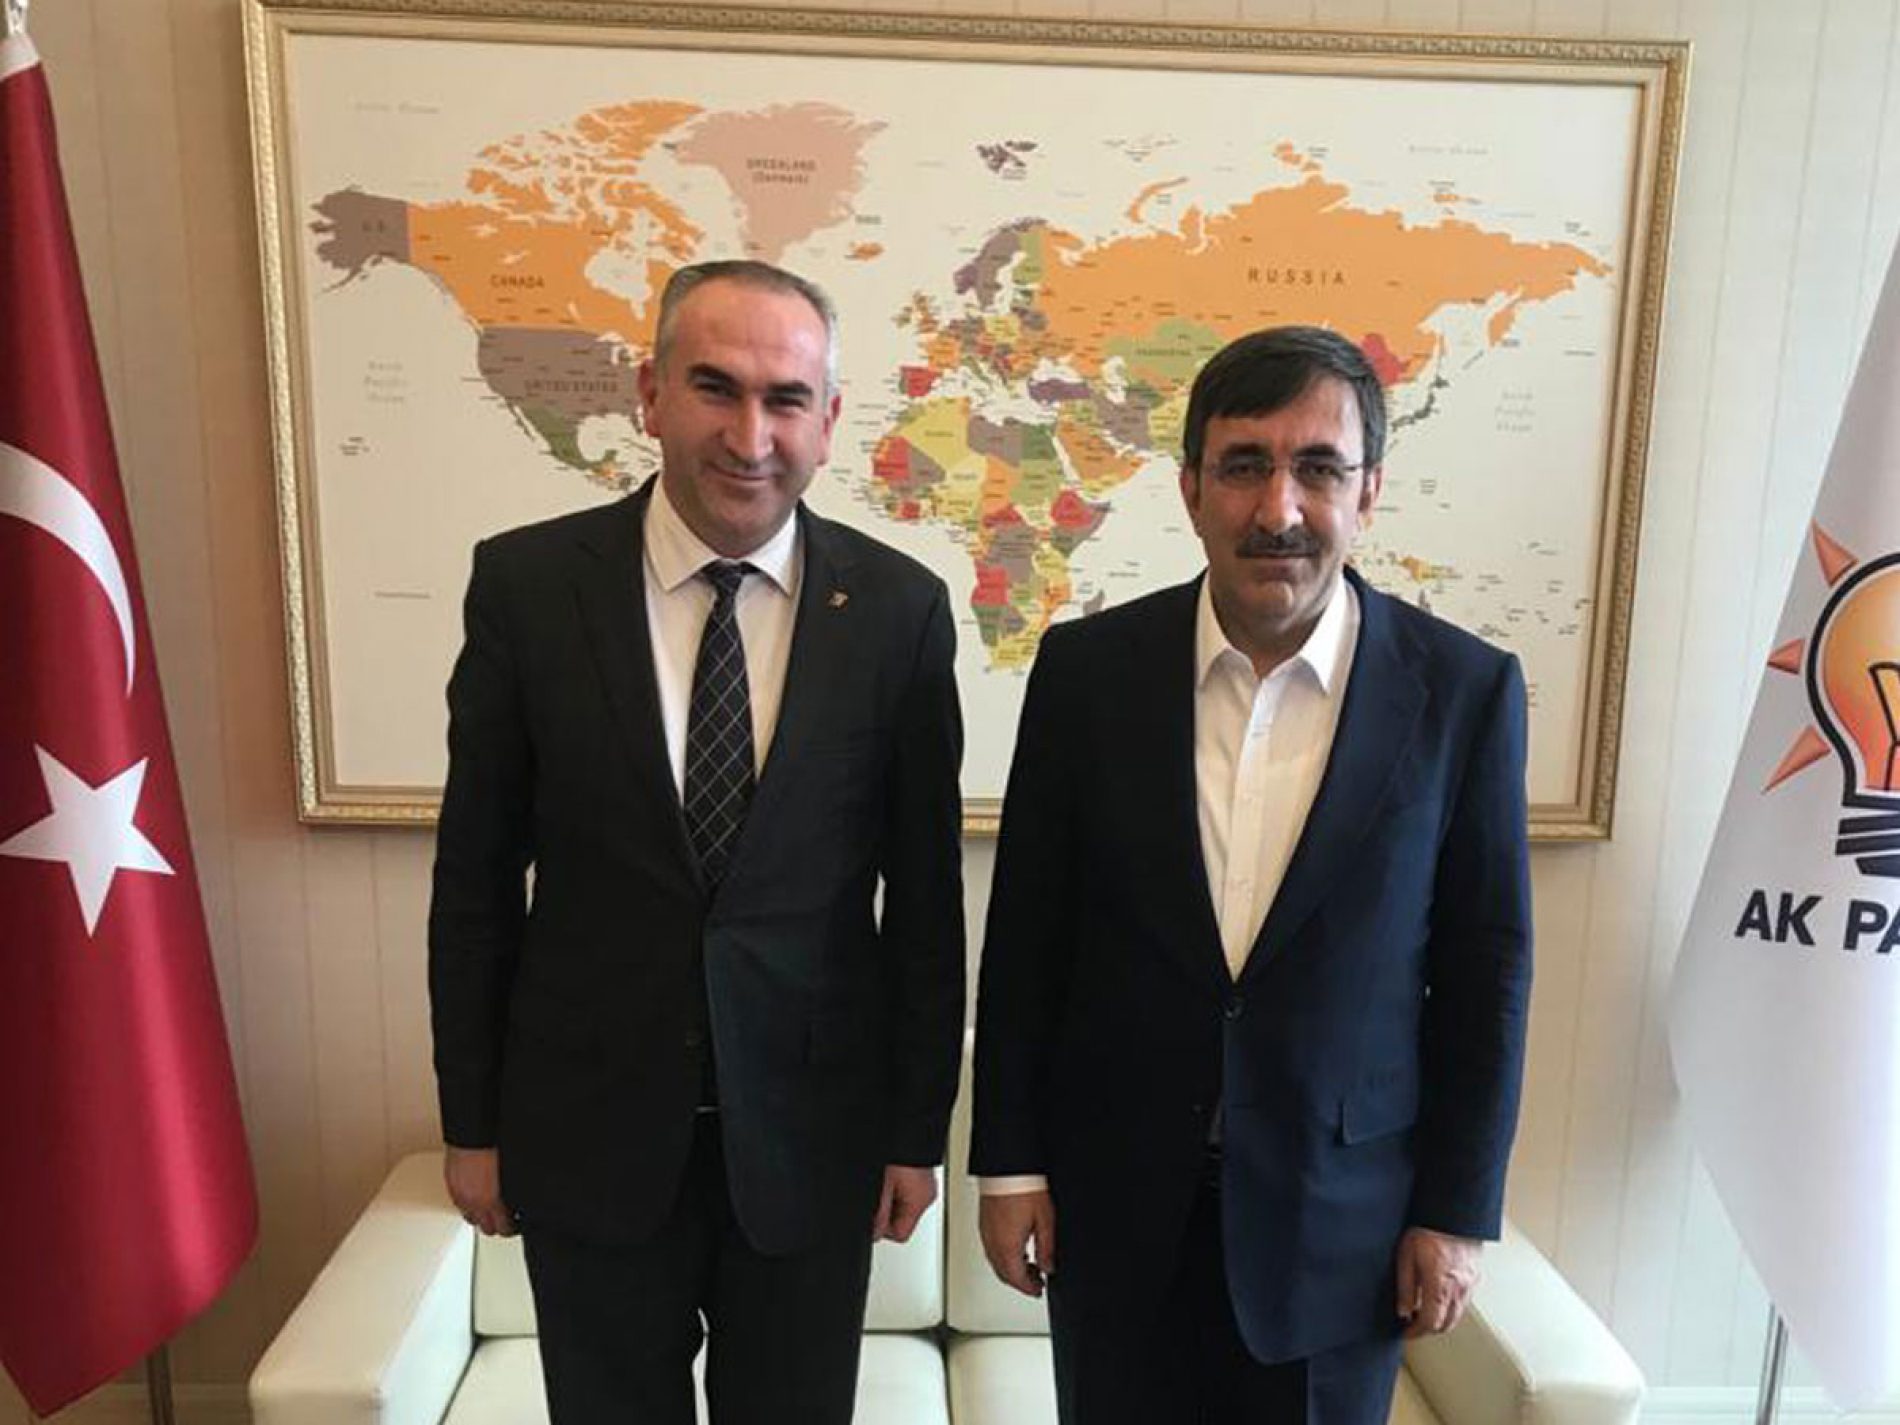 协会会长İhsan BEŞER拜访了正义与发展党对外关系部部长Cevdet YILMAZ